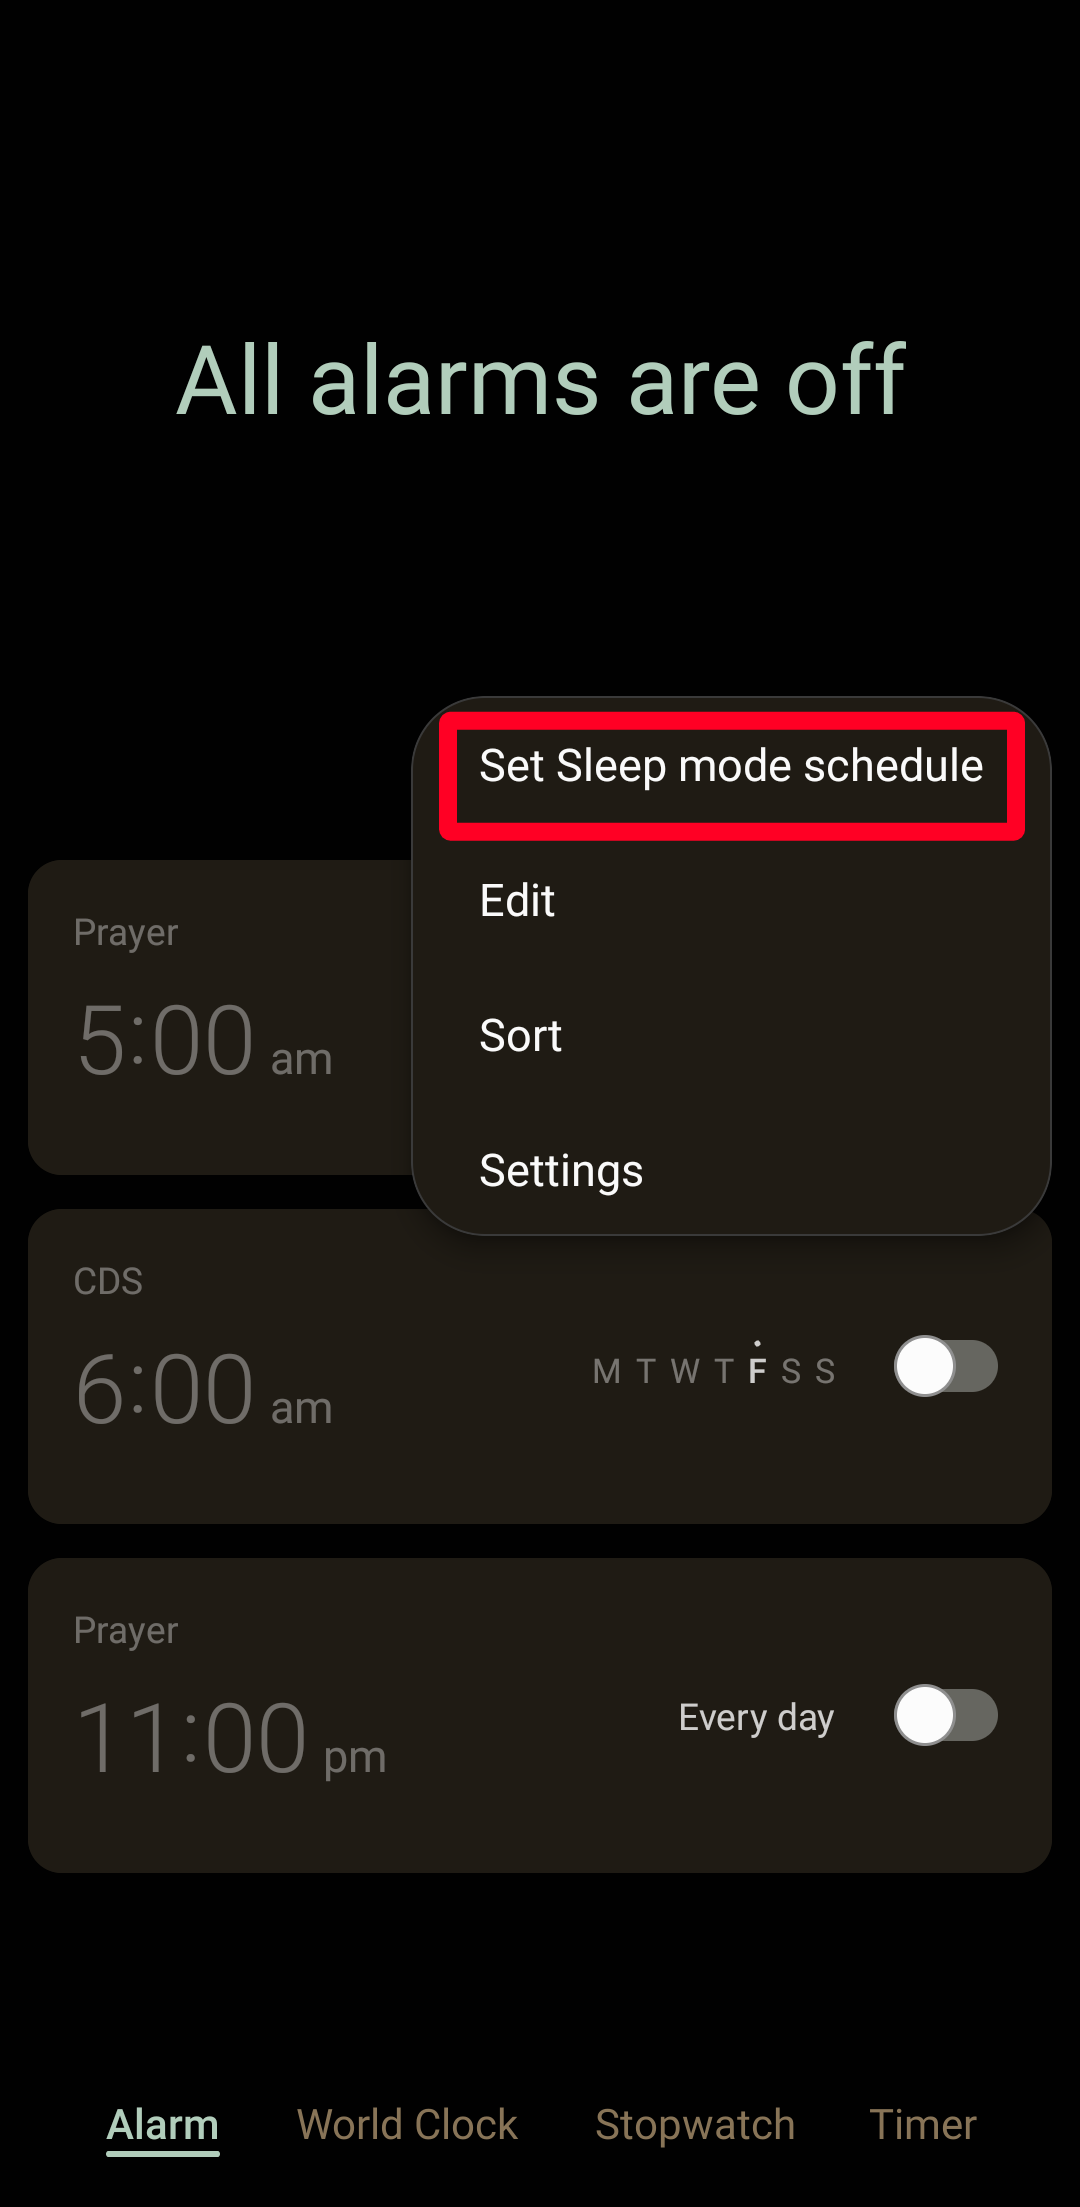 Tetapkan jadwal mode Tidur di aplikasi Jam Samsung